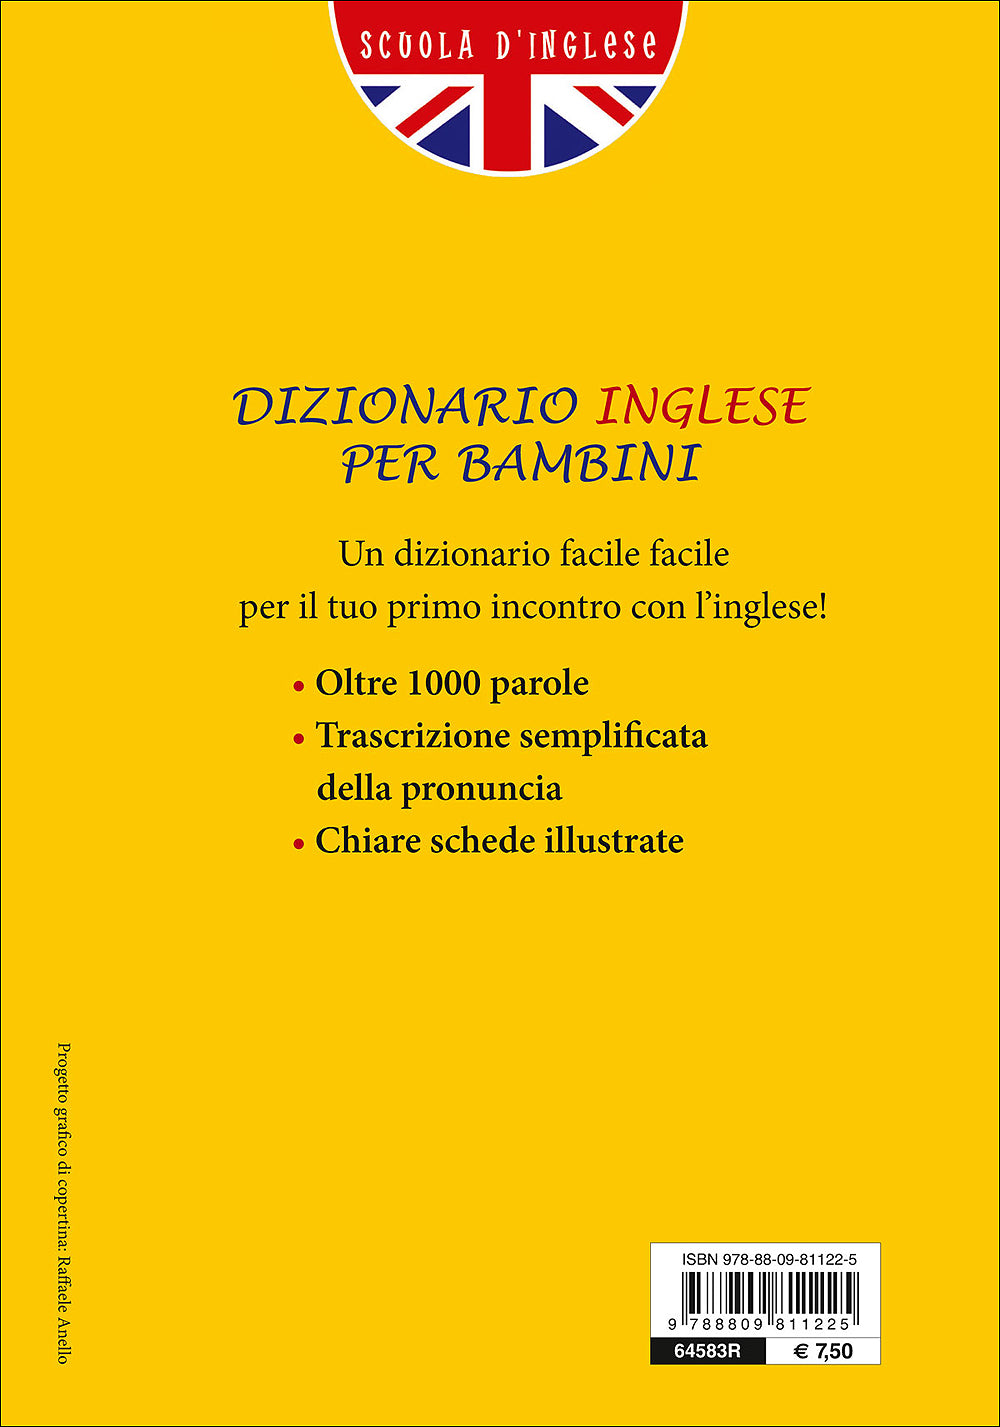 Dizionario Inglese per bambini. Italiano/Inglese English/Italian - Strumenti per bambini di 8/11 anni